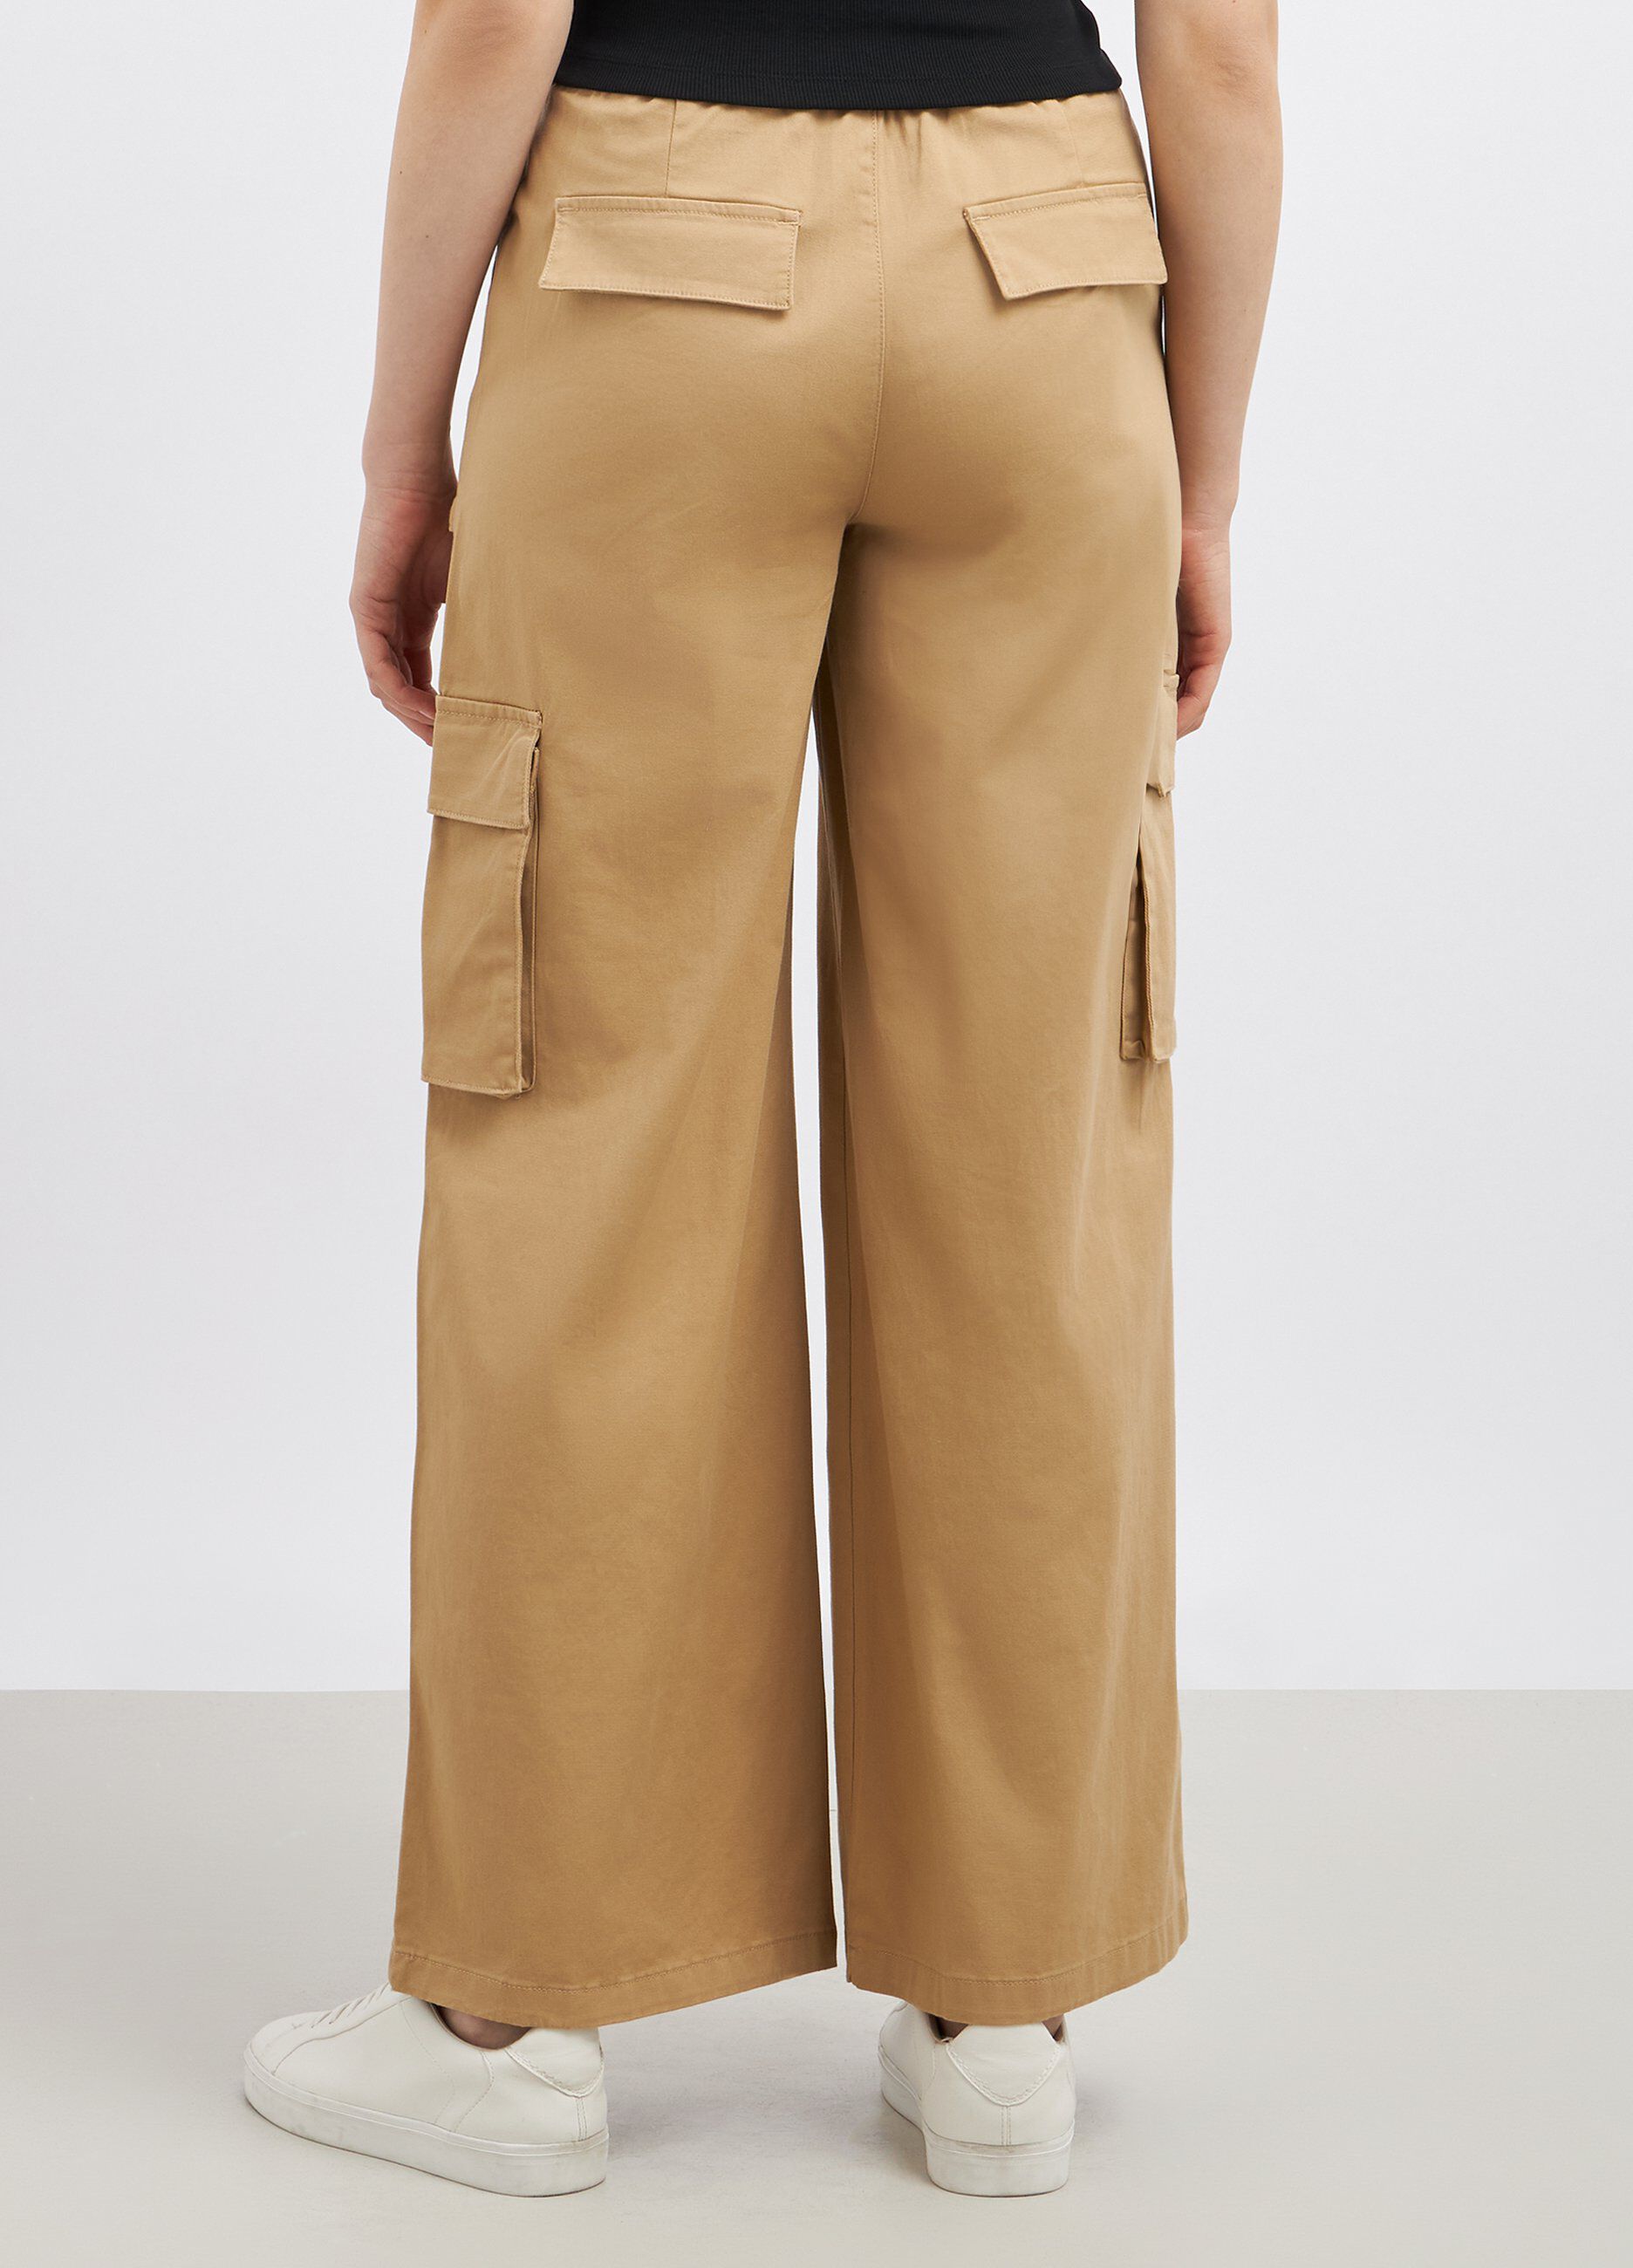 Pantaloni cargo in cotone stretch donna_1